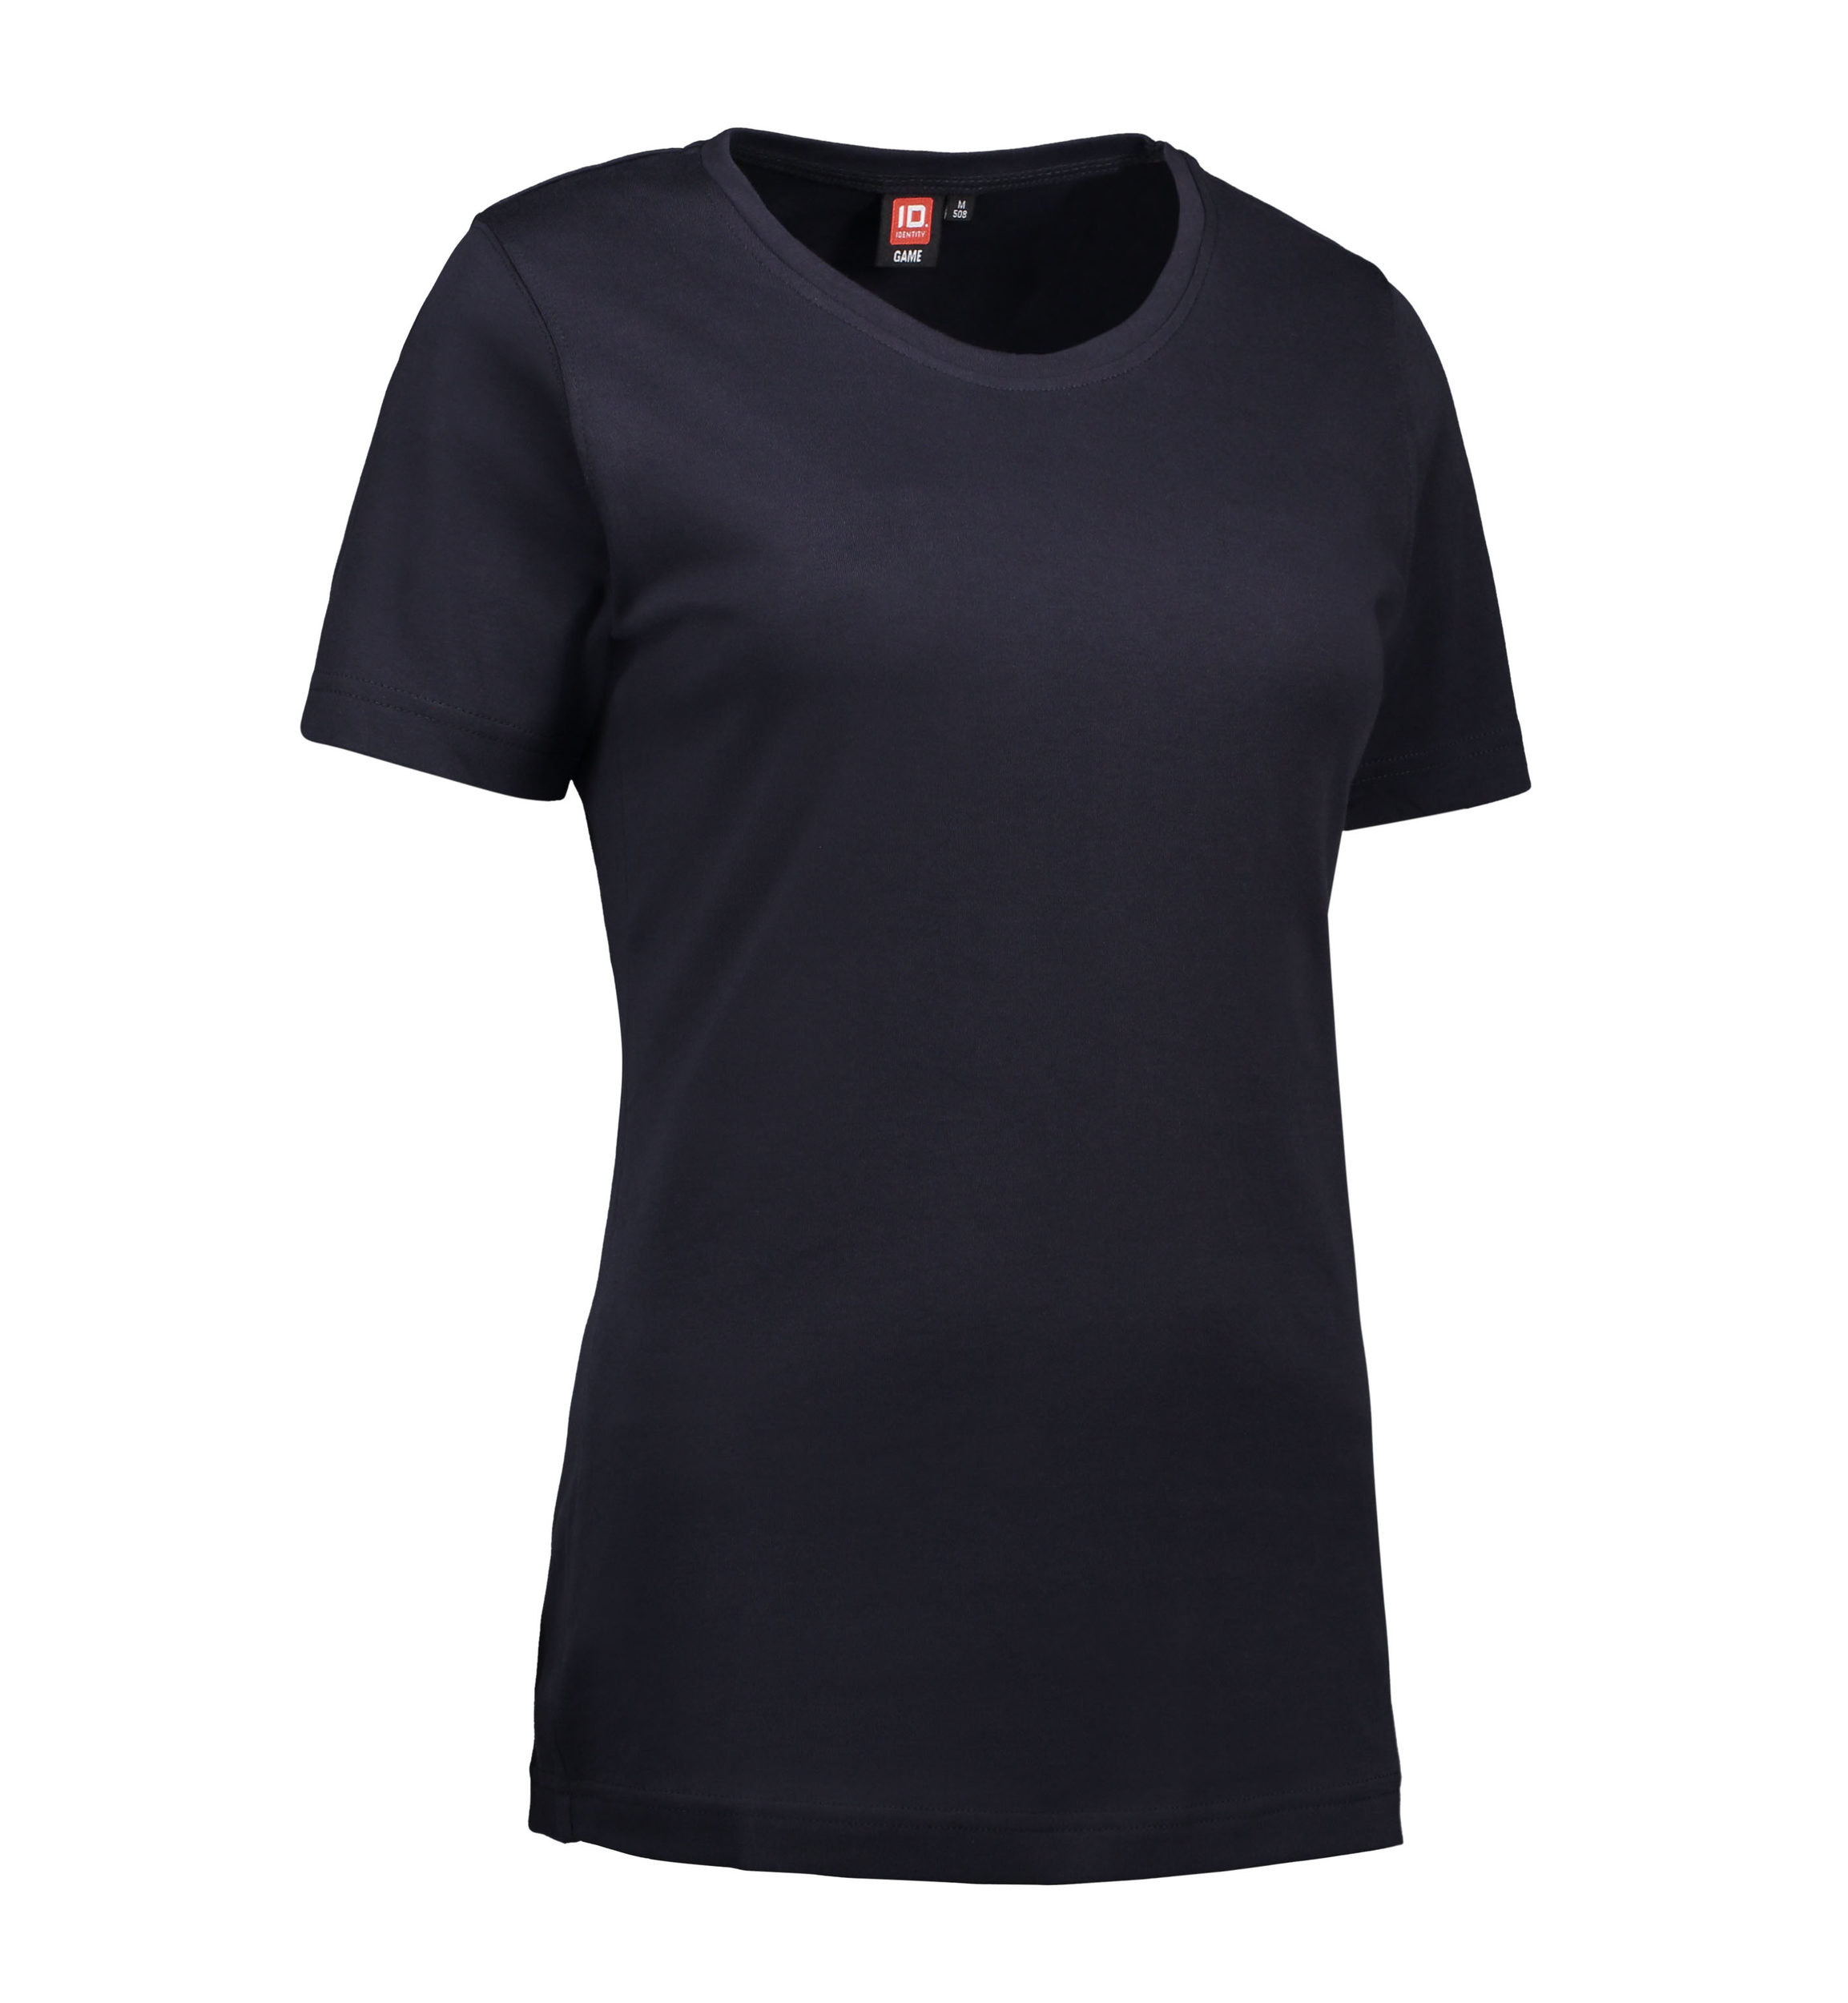 Billede af Navy t-shirt med rund hals til damer - 2XL hos Sygeplejebutikken.dk